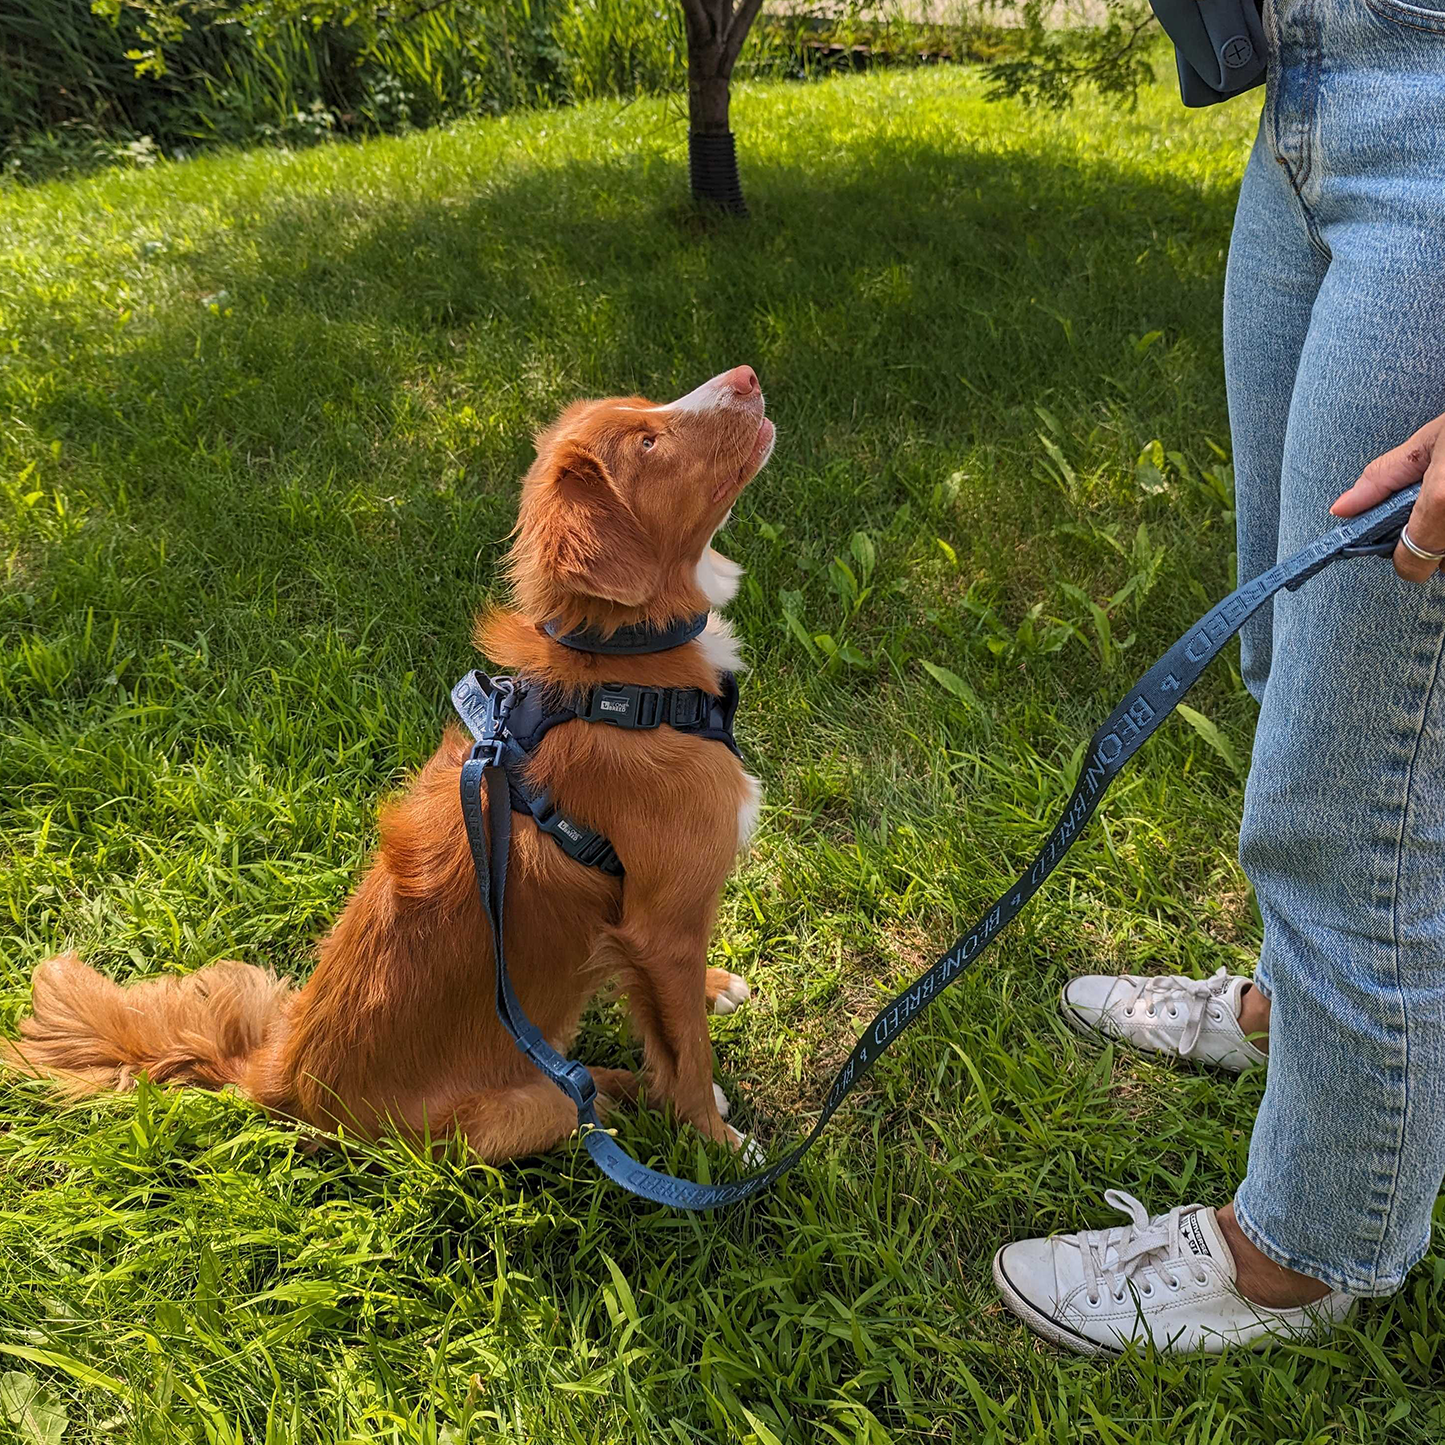 Adjustable nylon dog leash, teal